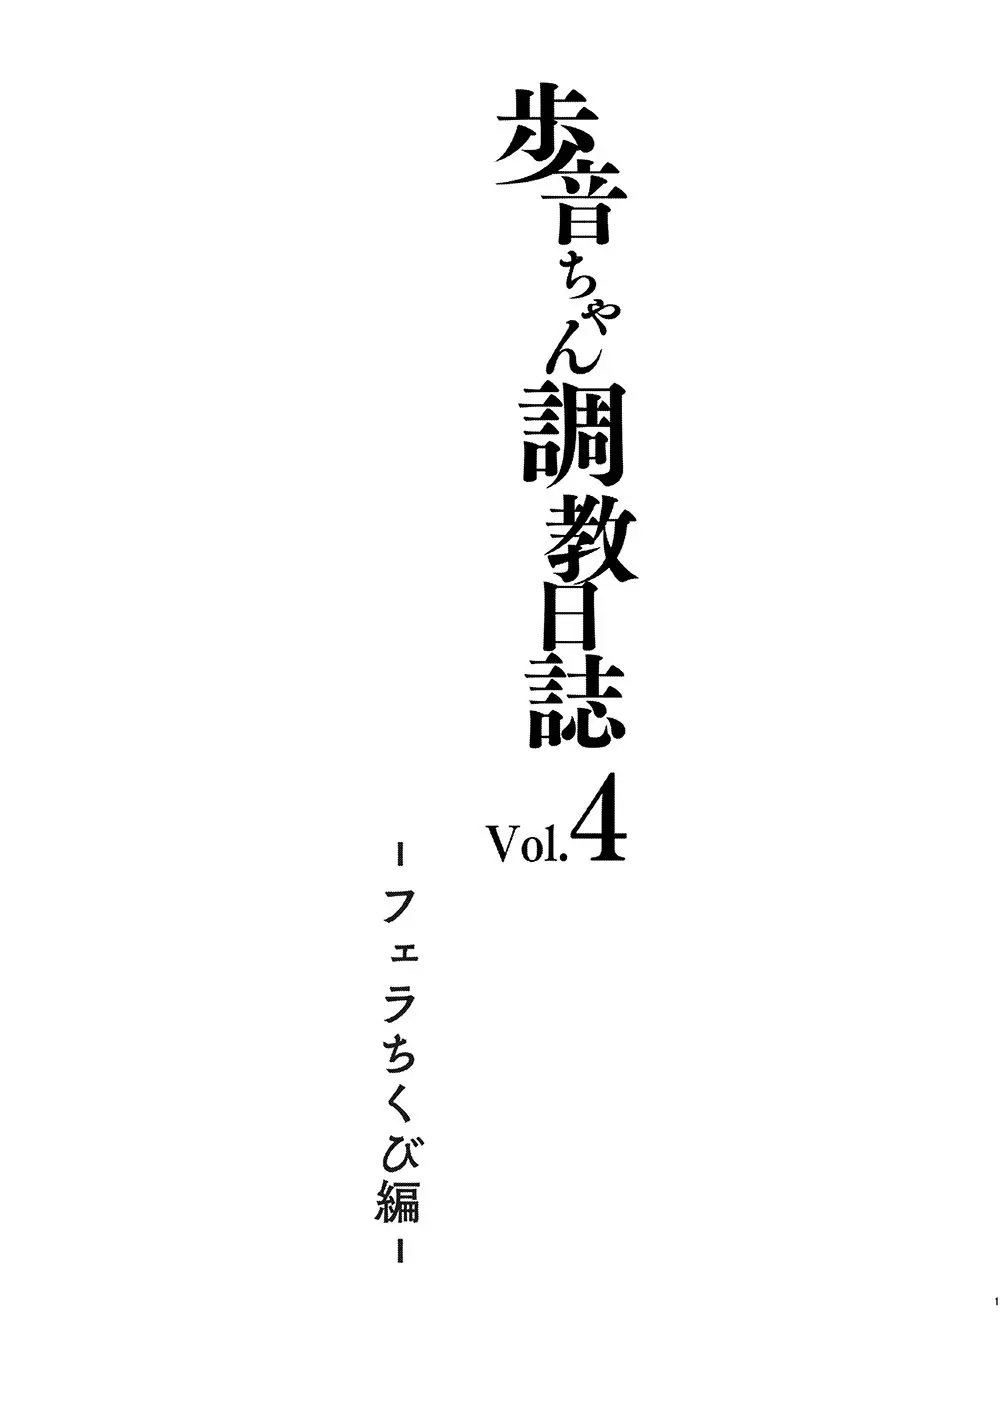 歩音ちゃん調教日誌 Vol.4 -フェラちくび編- 2ページ